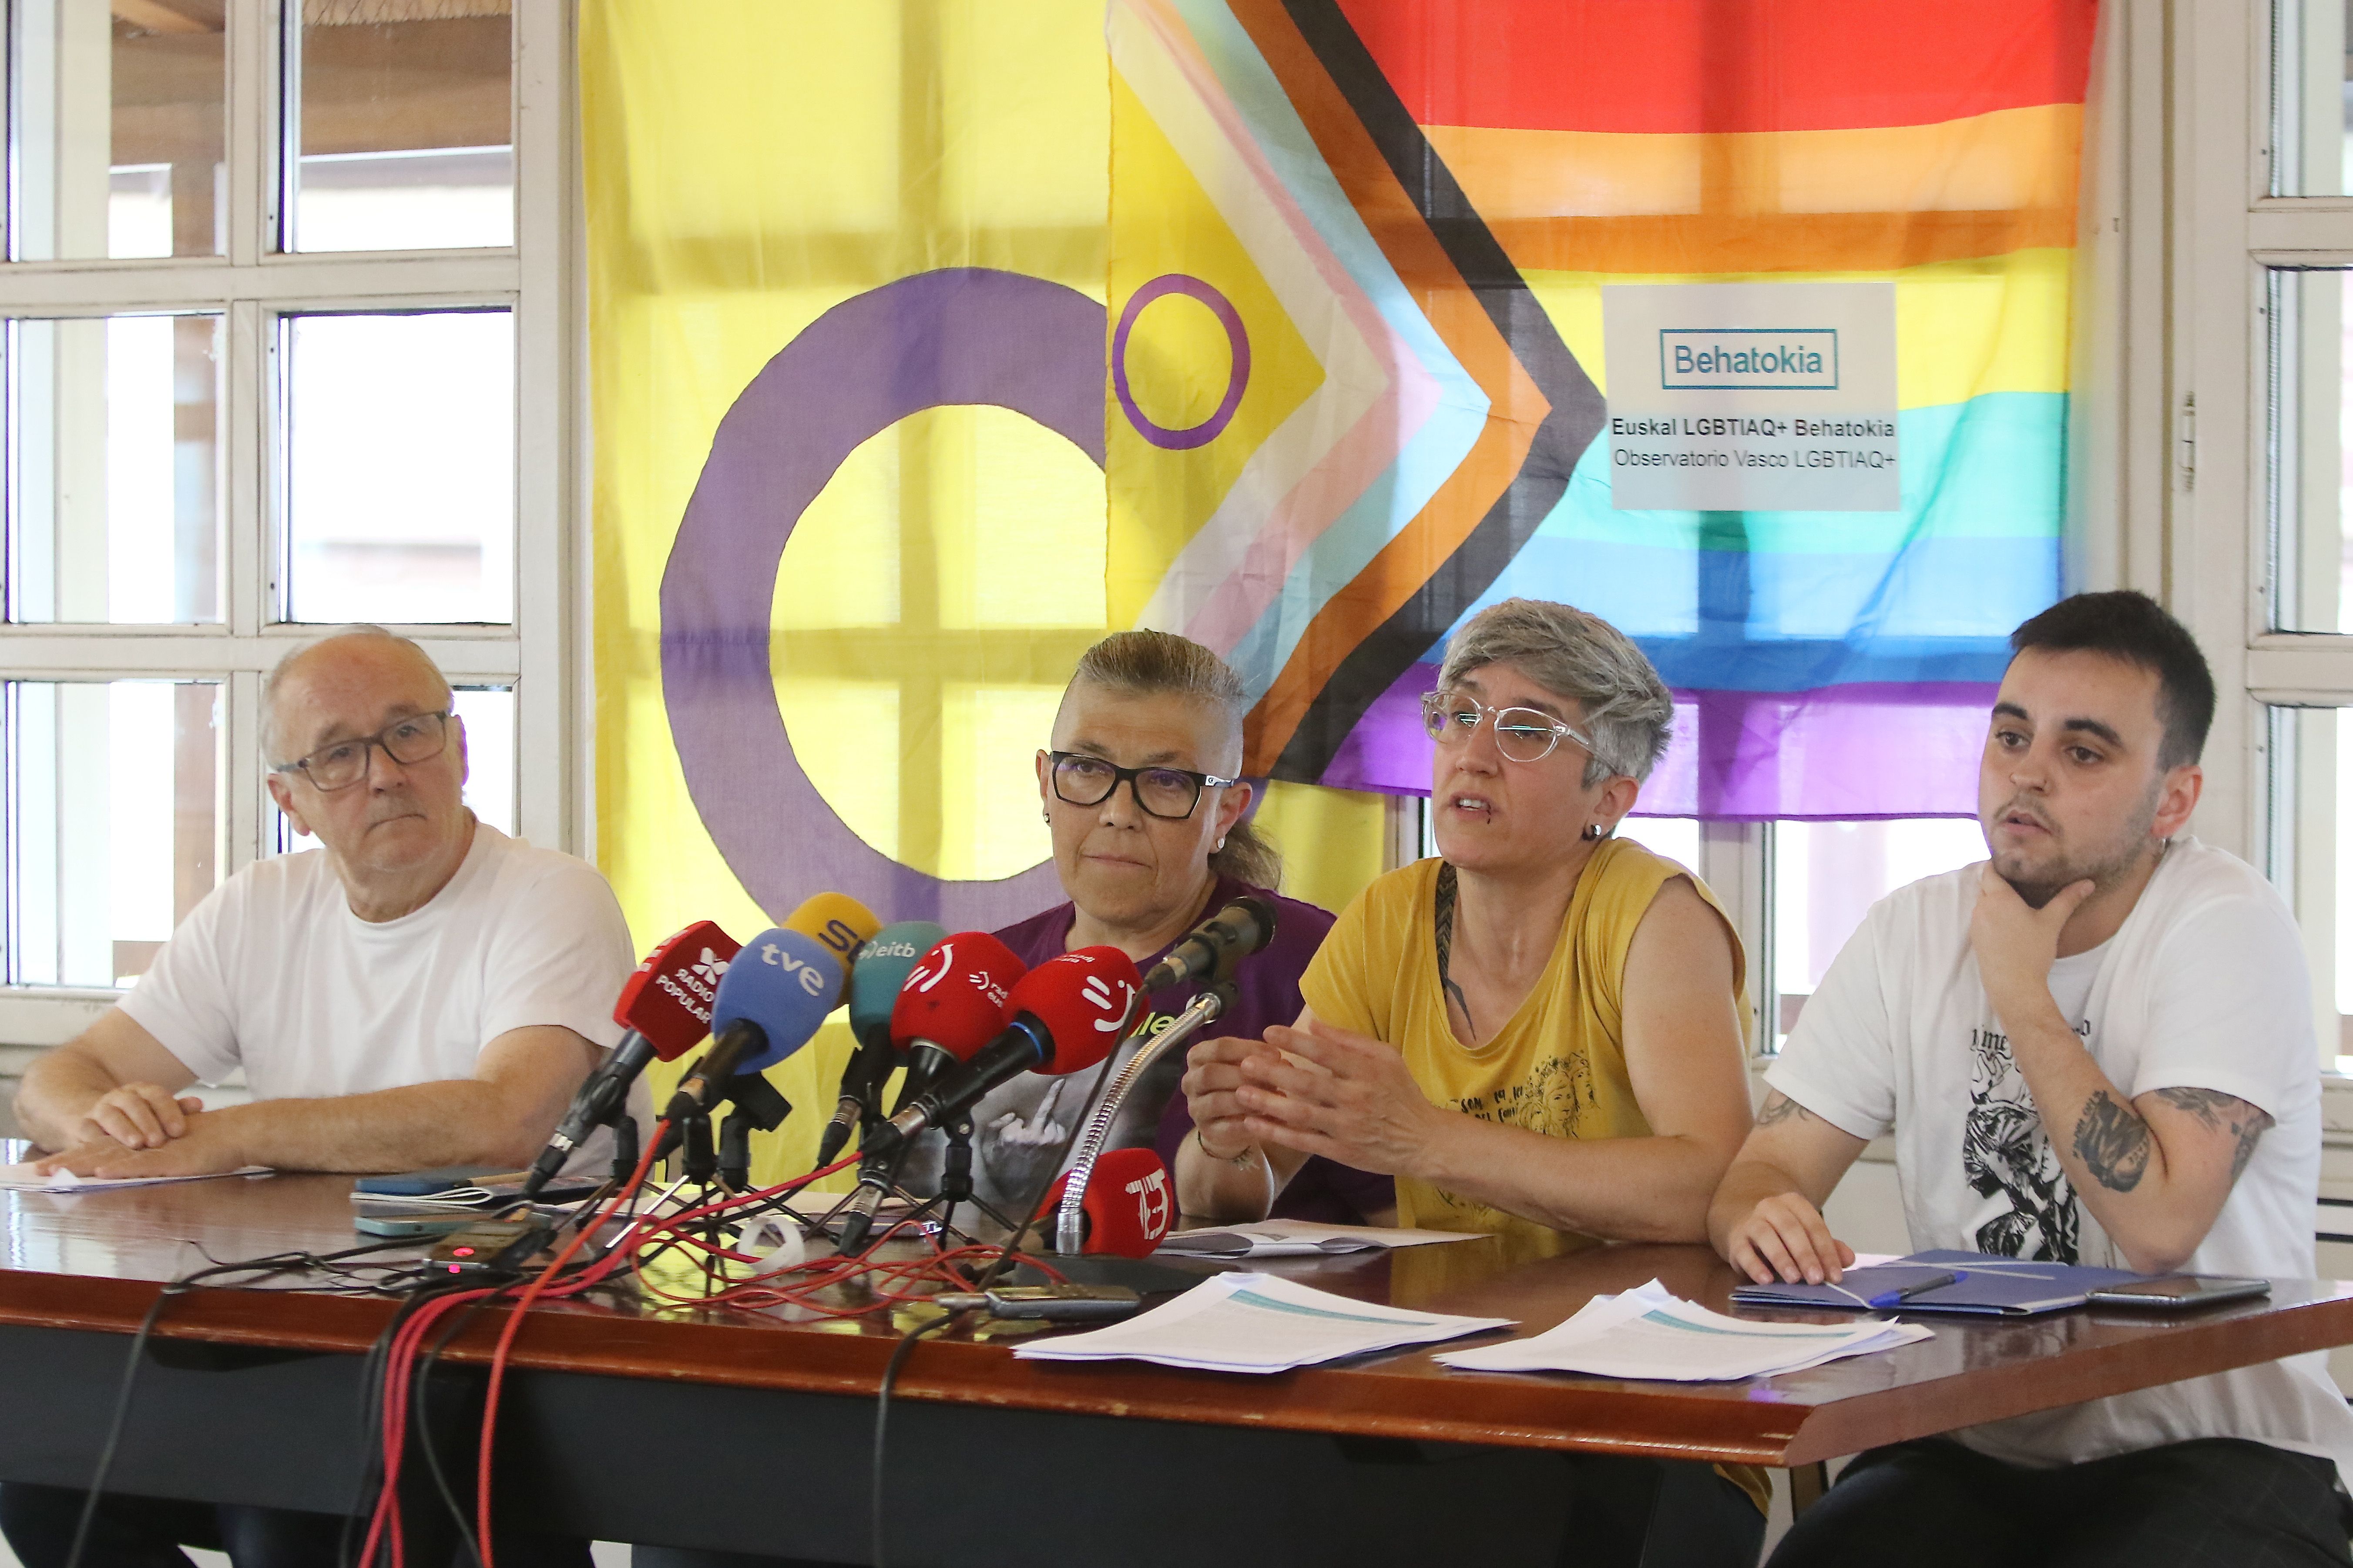 Euskal LGBTIAQ+ Behatokiak agerraldia egin du gaur, Bilbon. OSKAR MATXIN EDESA / FOKU